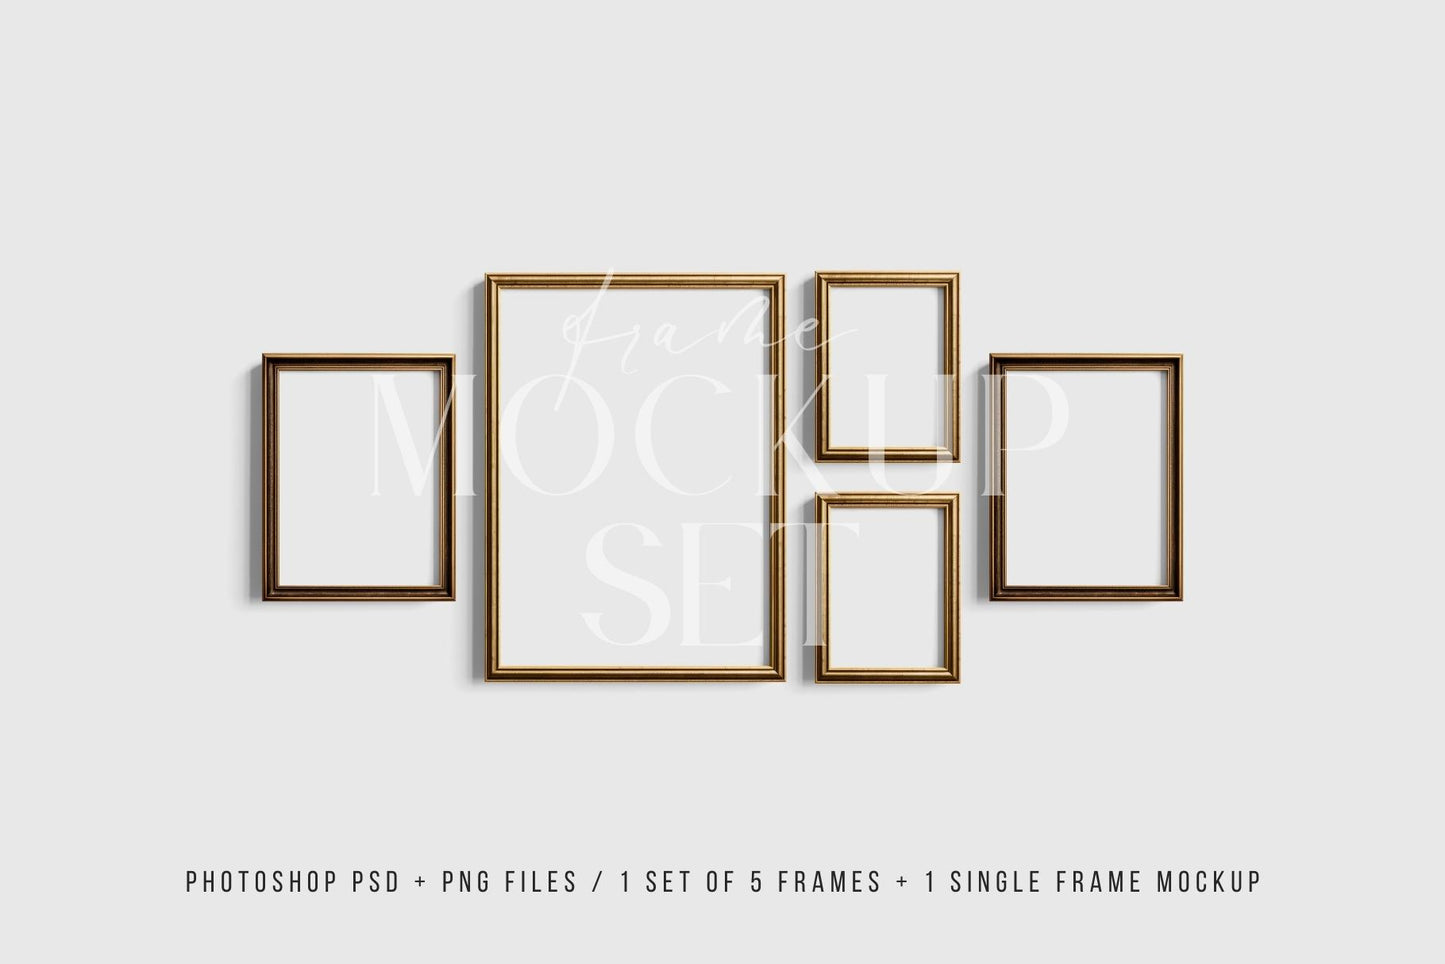 Gallery Wall Mockup | Metallic Frame Mockup Set of 5 Vertical Frames 5:7, 3:4 | Vintage Gold Frame Mockup Set | PSD Template + Transparent PNG Files